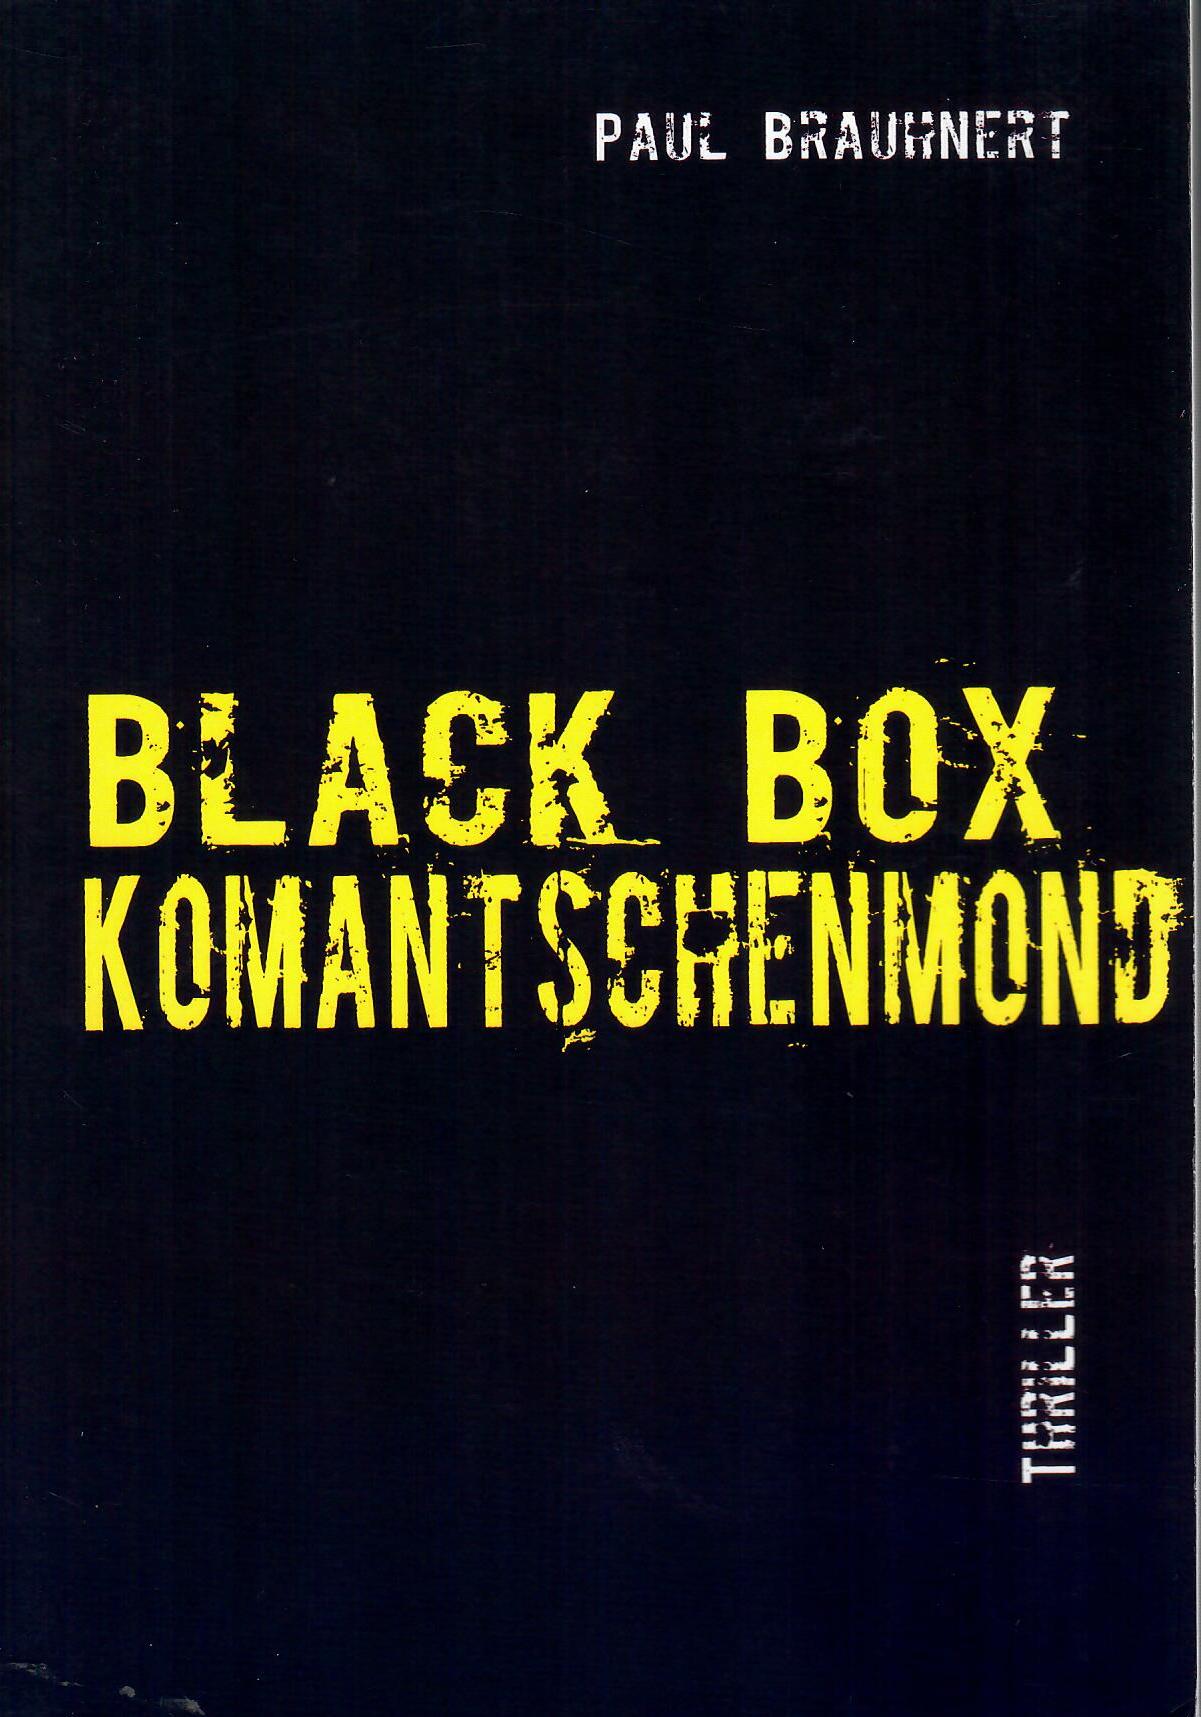 Black Box Komantschenmond - Thriller; Nach teilweise wahren Begebenheiten geschrieben und gezeichnet von Reiner von Viehlen alias Paul J. H. Brauhnert - Mit farbigen Bildtafeln - Mit Signatur des Autors 